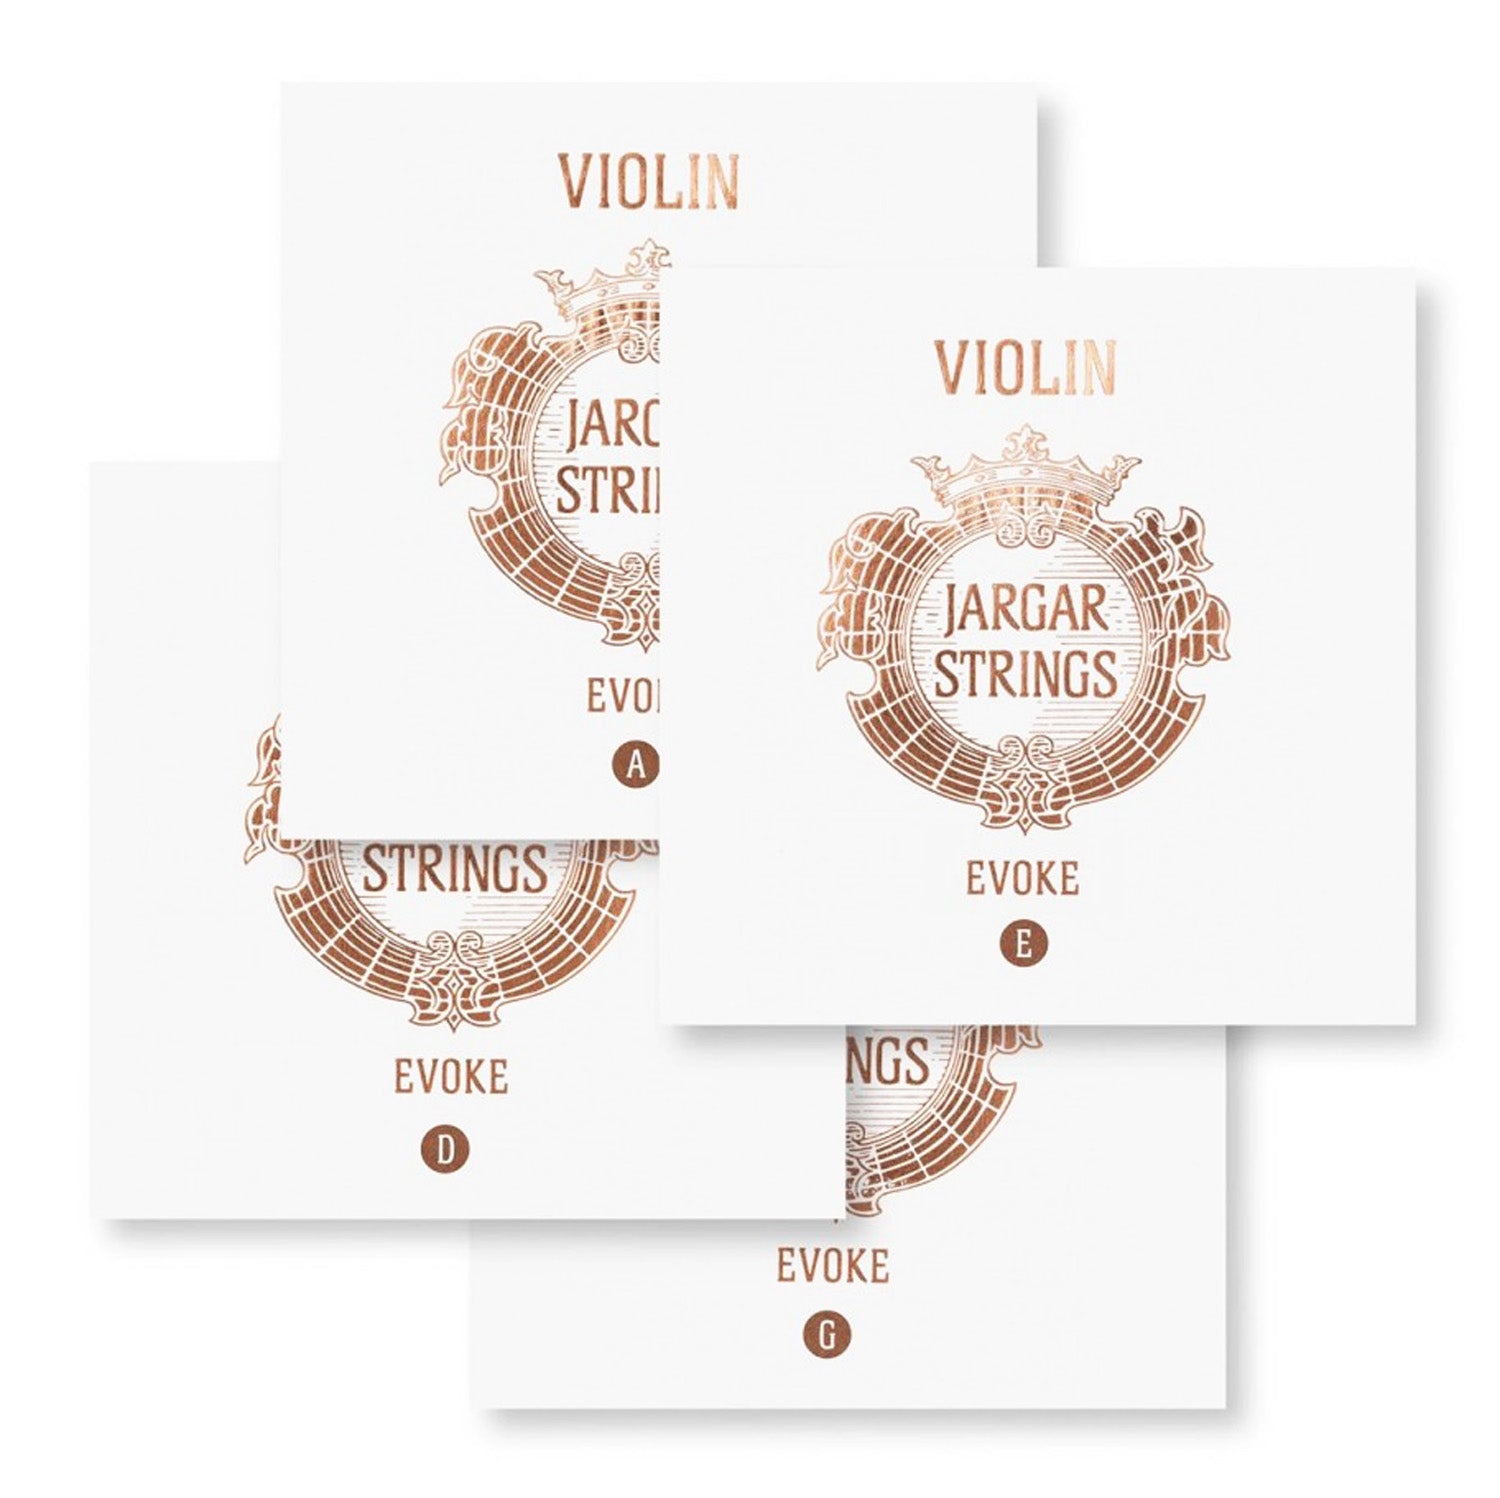 Evoke Violin Set